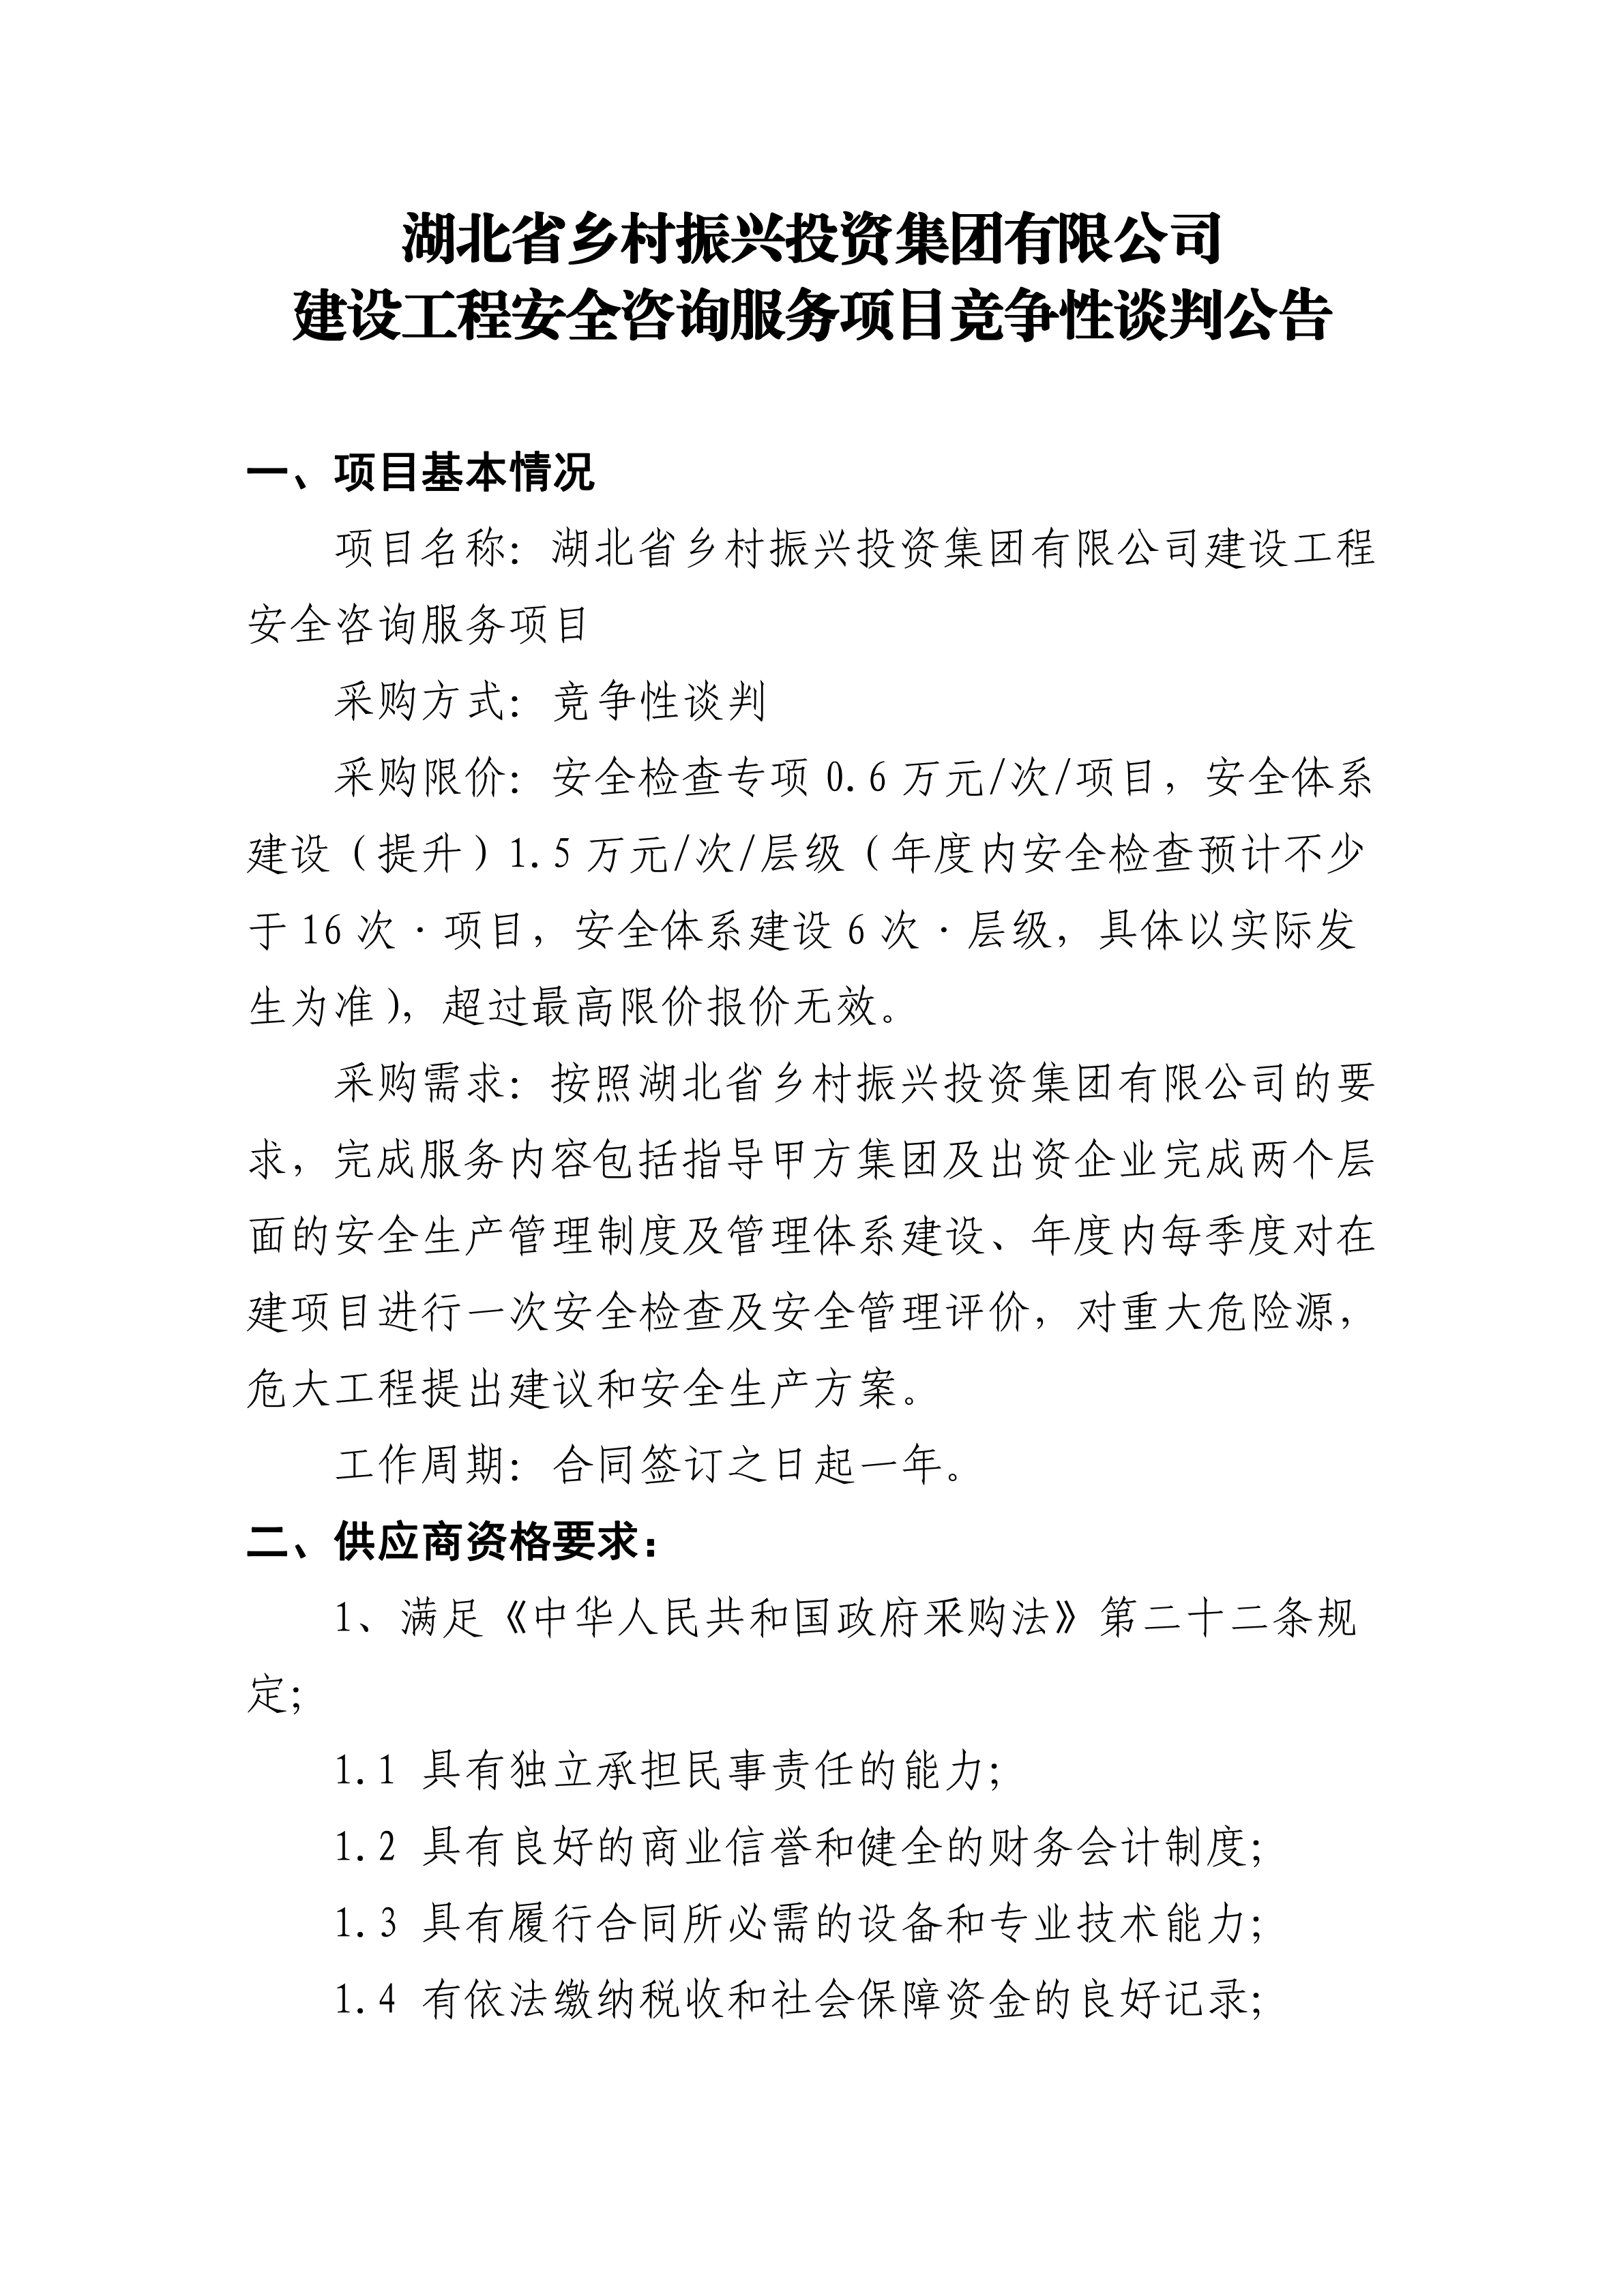 湖北省乡村振兴投资集团有限公司建设工程安全咨询服务项目竞争性谈判公告